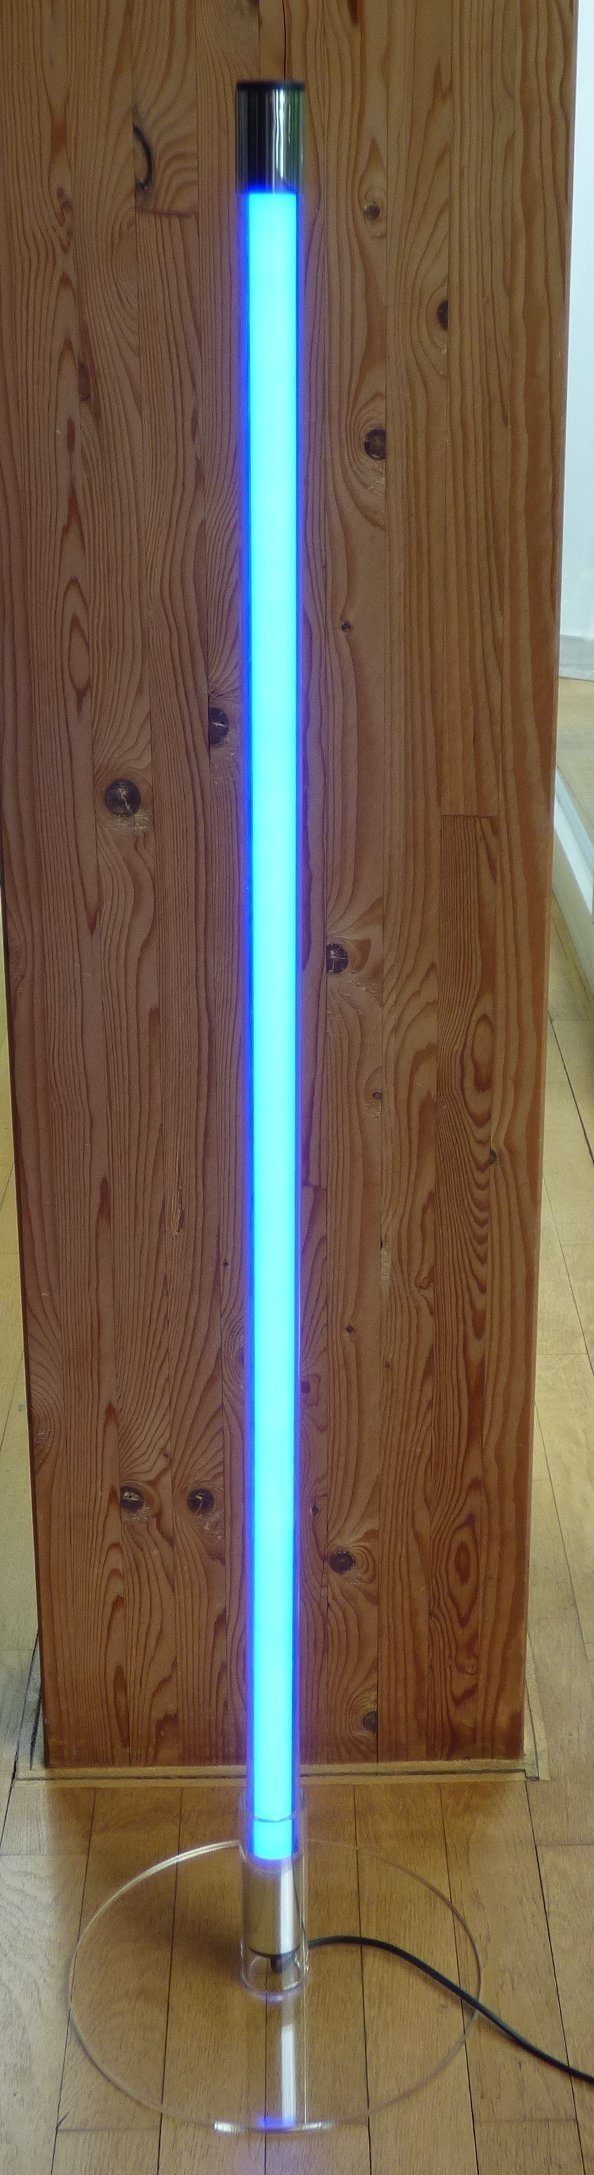 XENON LED Wandleuchte LED Leuchtstab K-Röhre 24 Watt Länge 1,53 m IP-20 Kunststoff Blau, LED Röhre T8, Xenon Blau